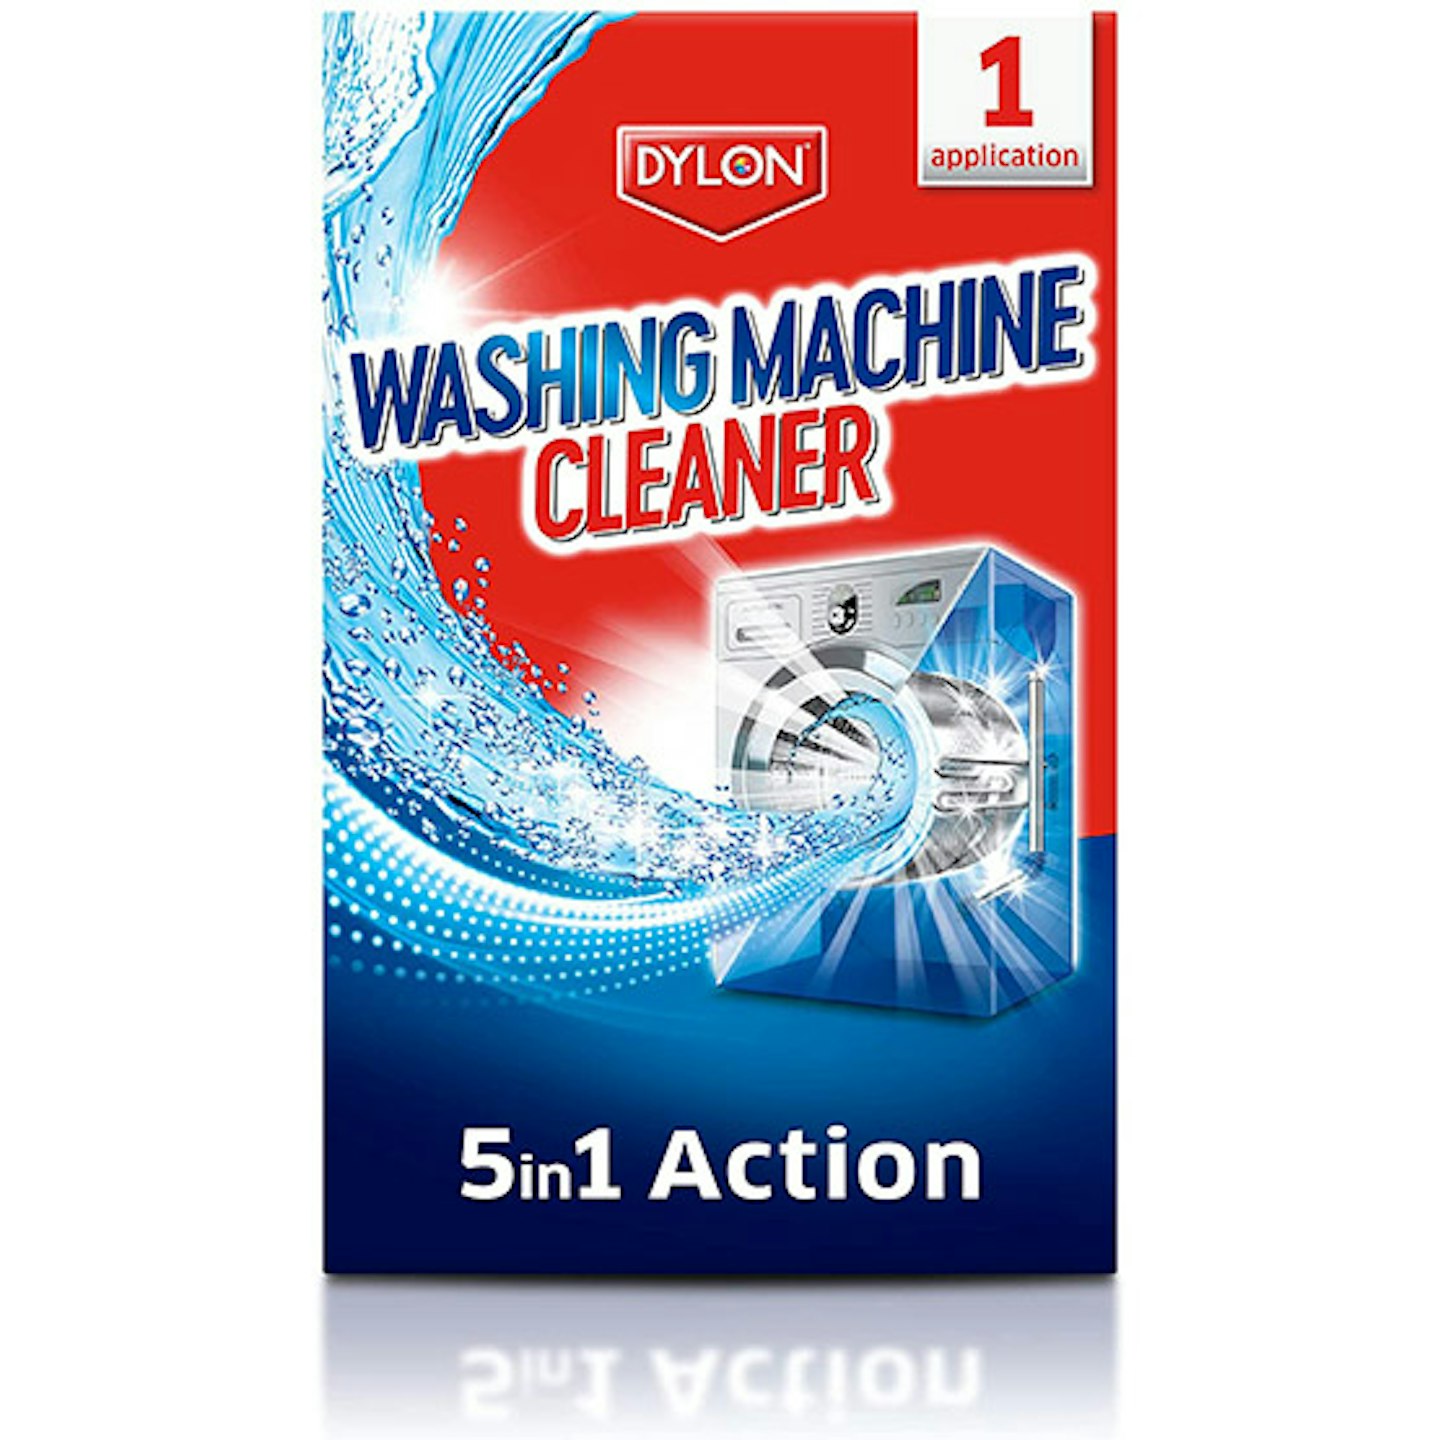 Dylon Washing Machine Cleaner 5-in-1